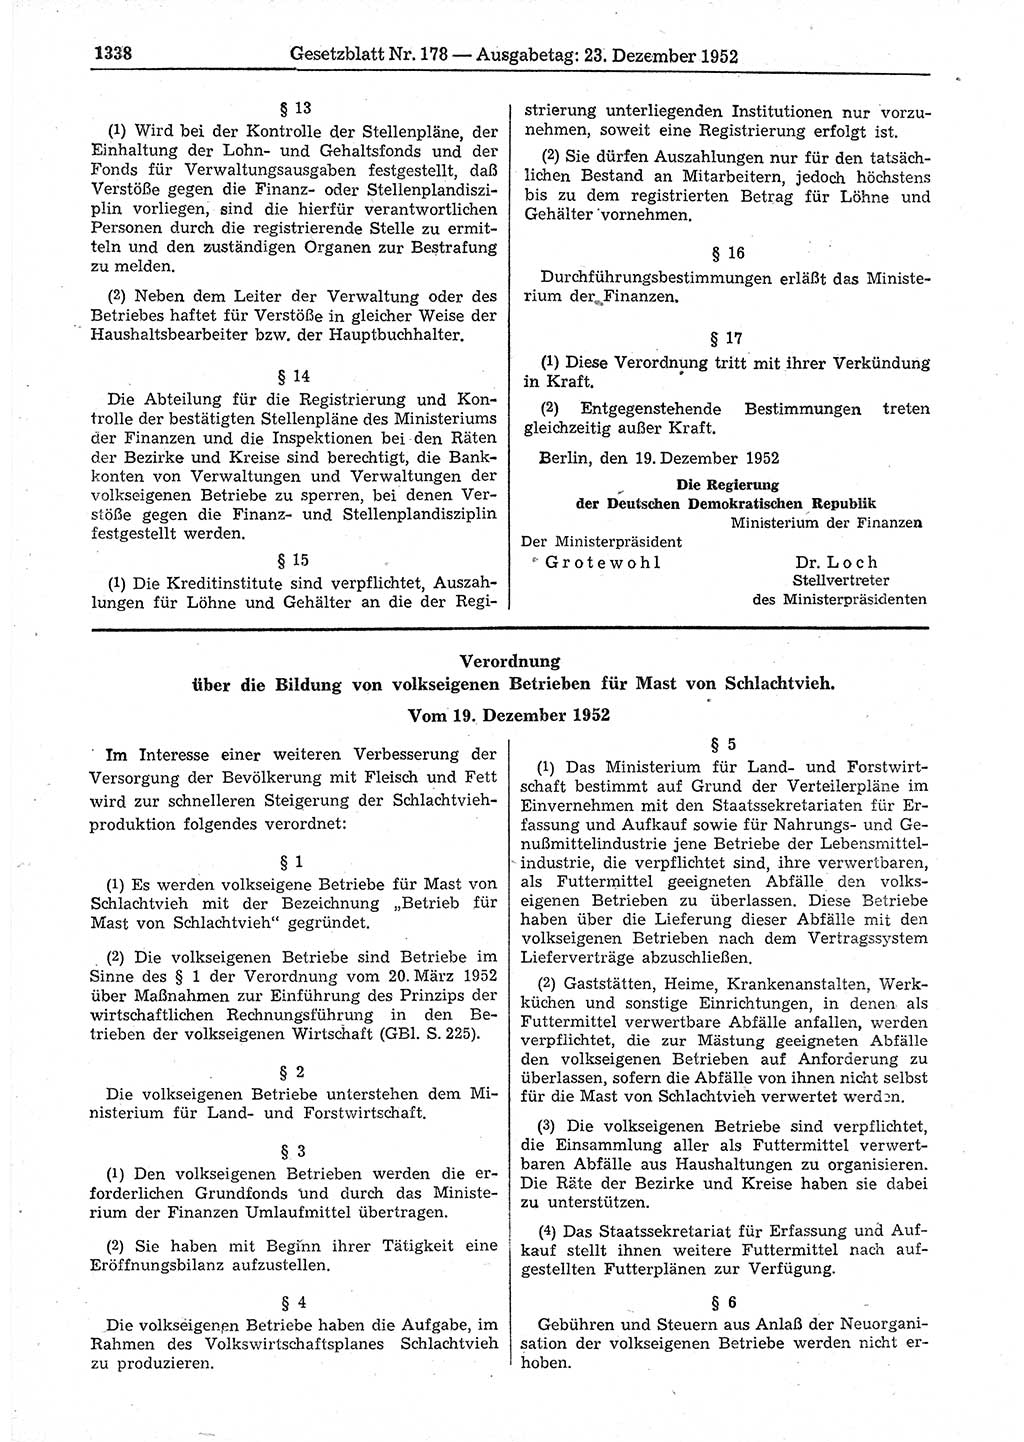 Gesetzblatt (GBl.) der Deutschen Demokratischen Republik (DDR) 1952, Seite 1338 (GBl. DDR 1952, S. 1338)